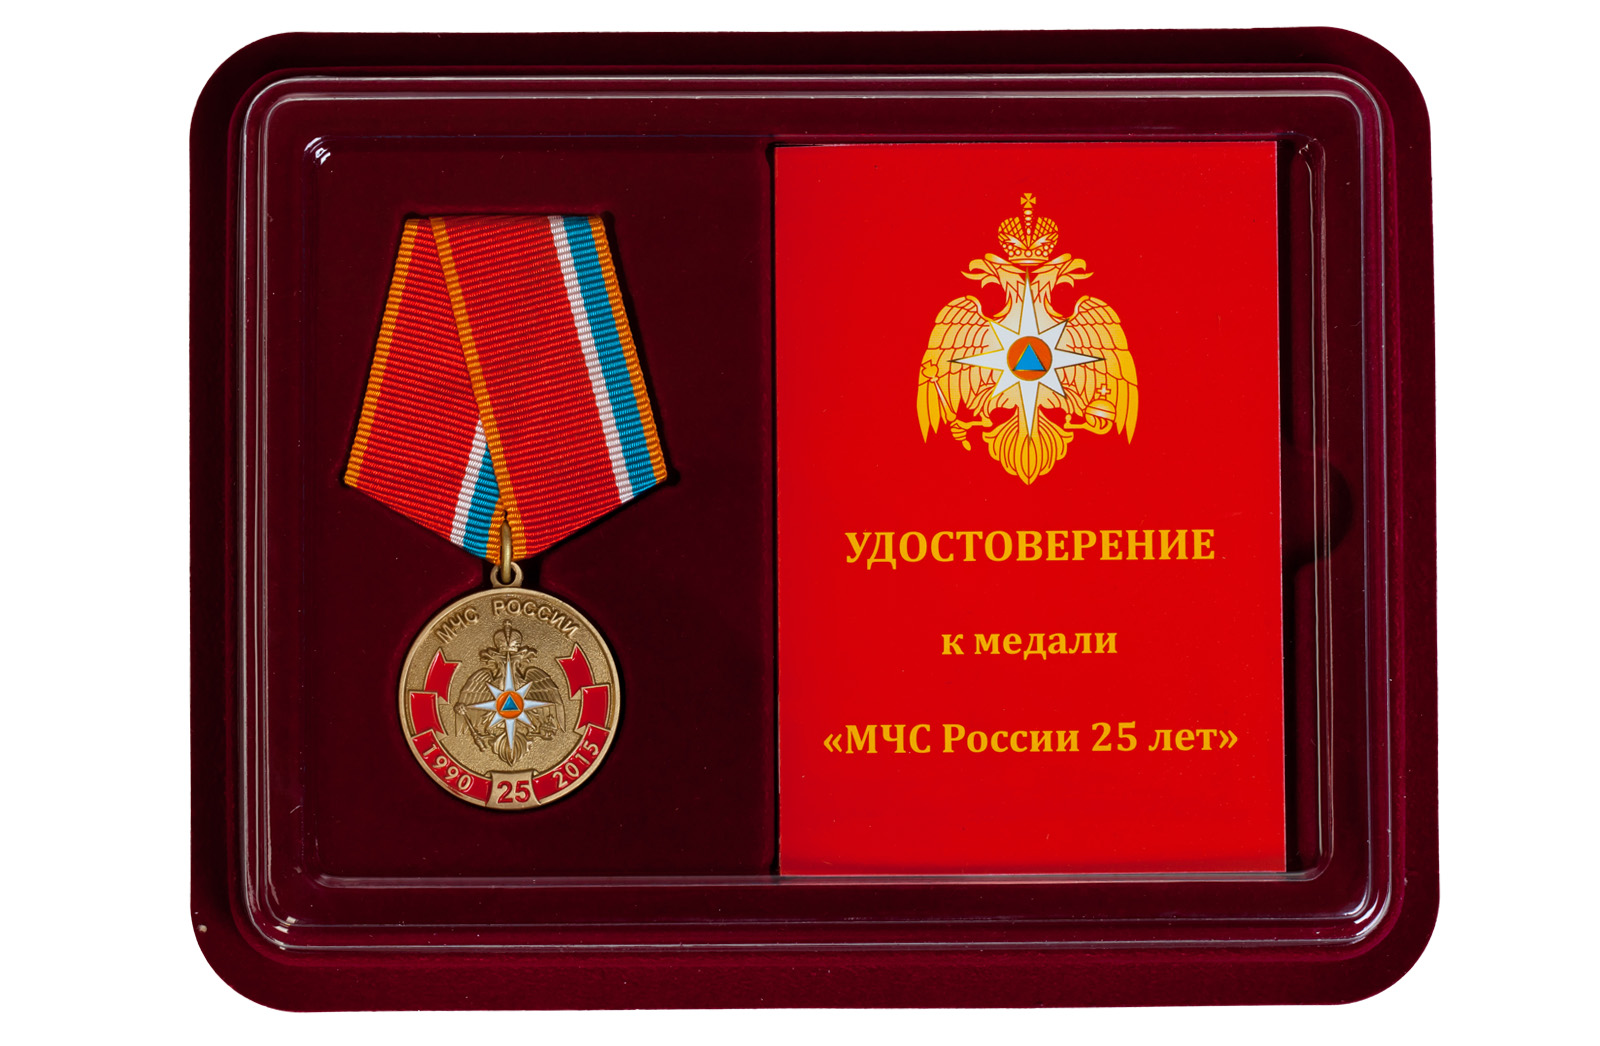 Купить памятную медаль 25 лет МЧС России оптом